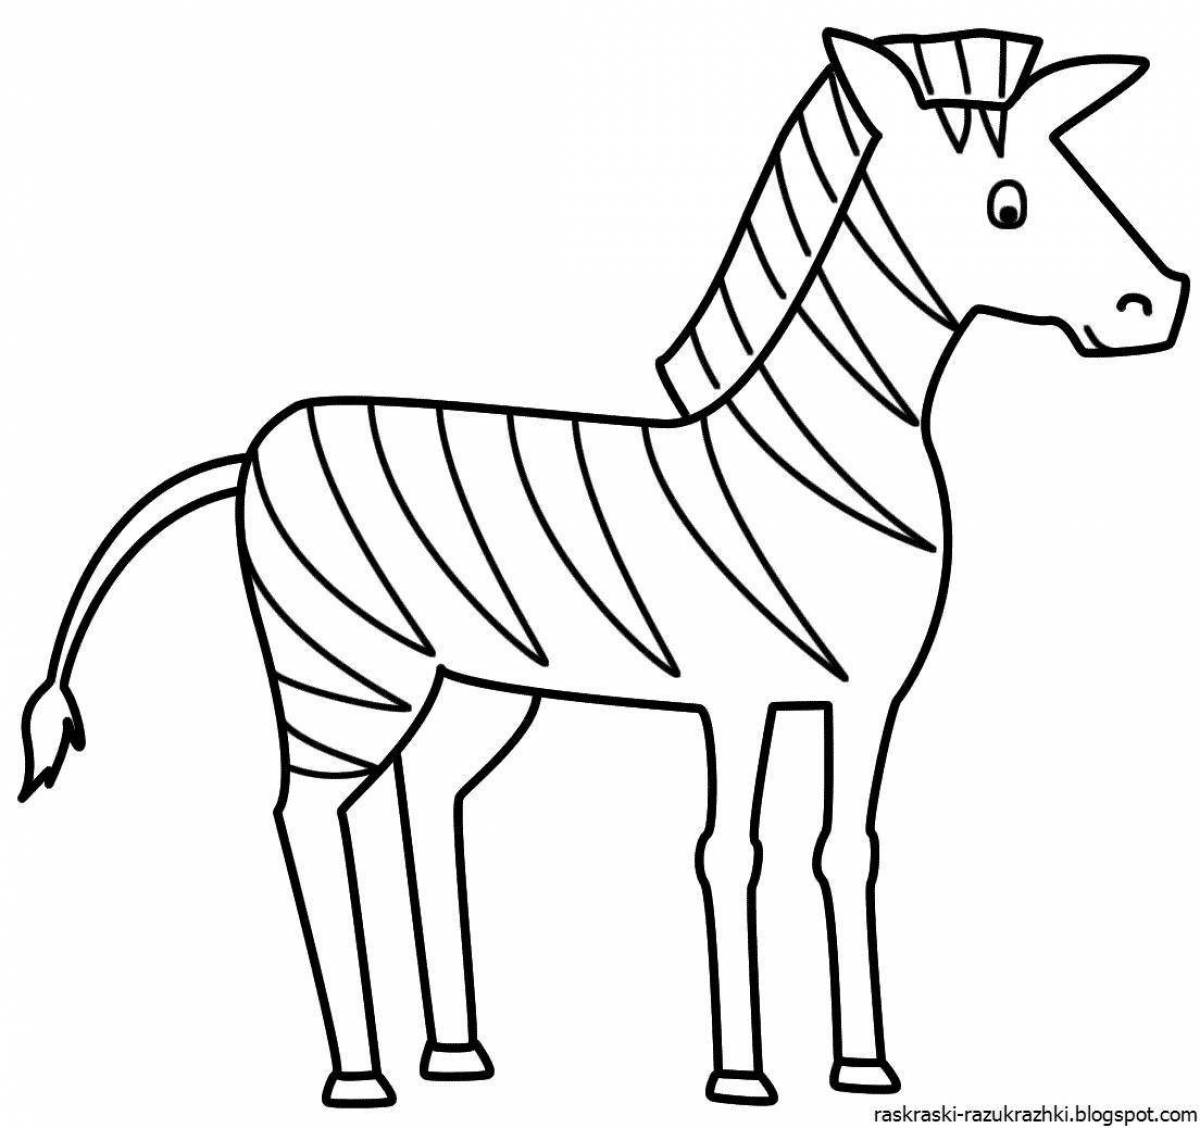 Раскраска яркая зебра для дошкольников 3-4 лет